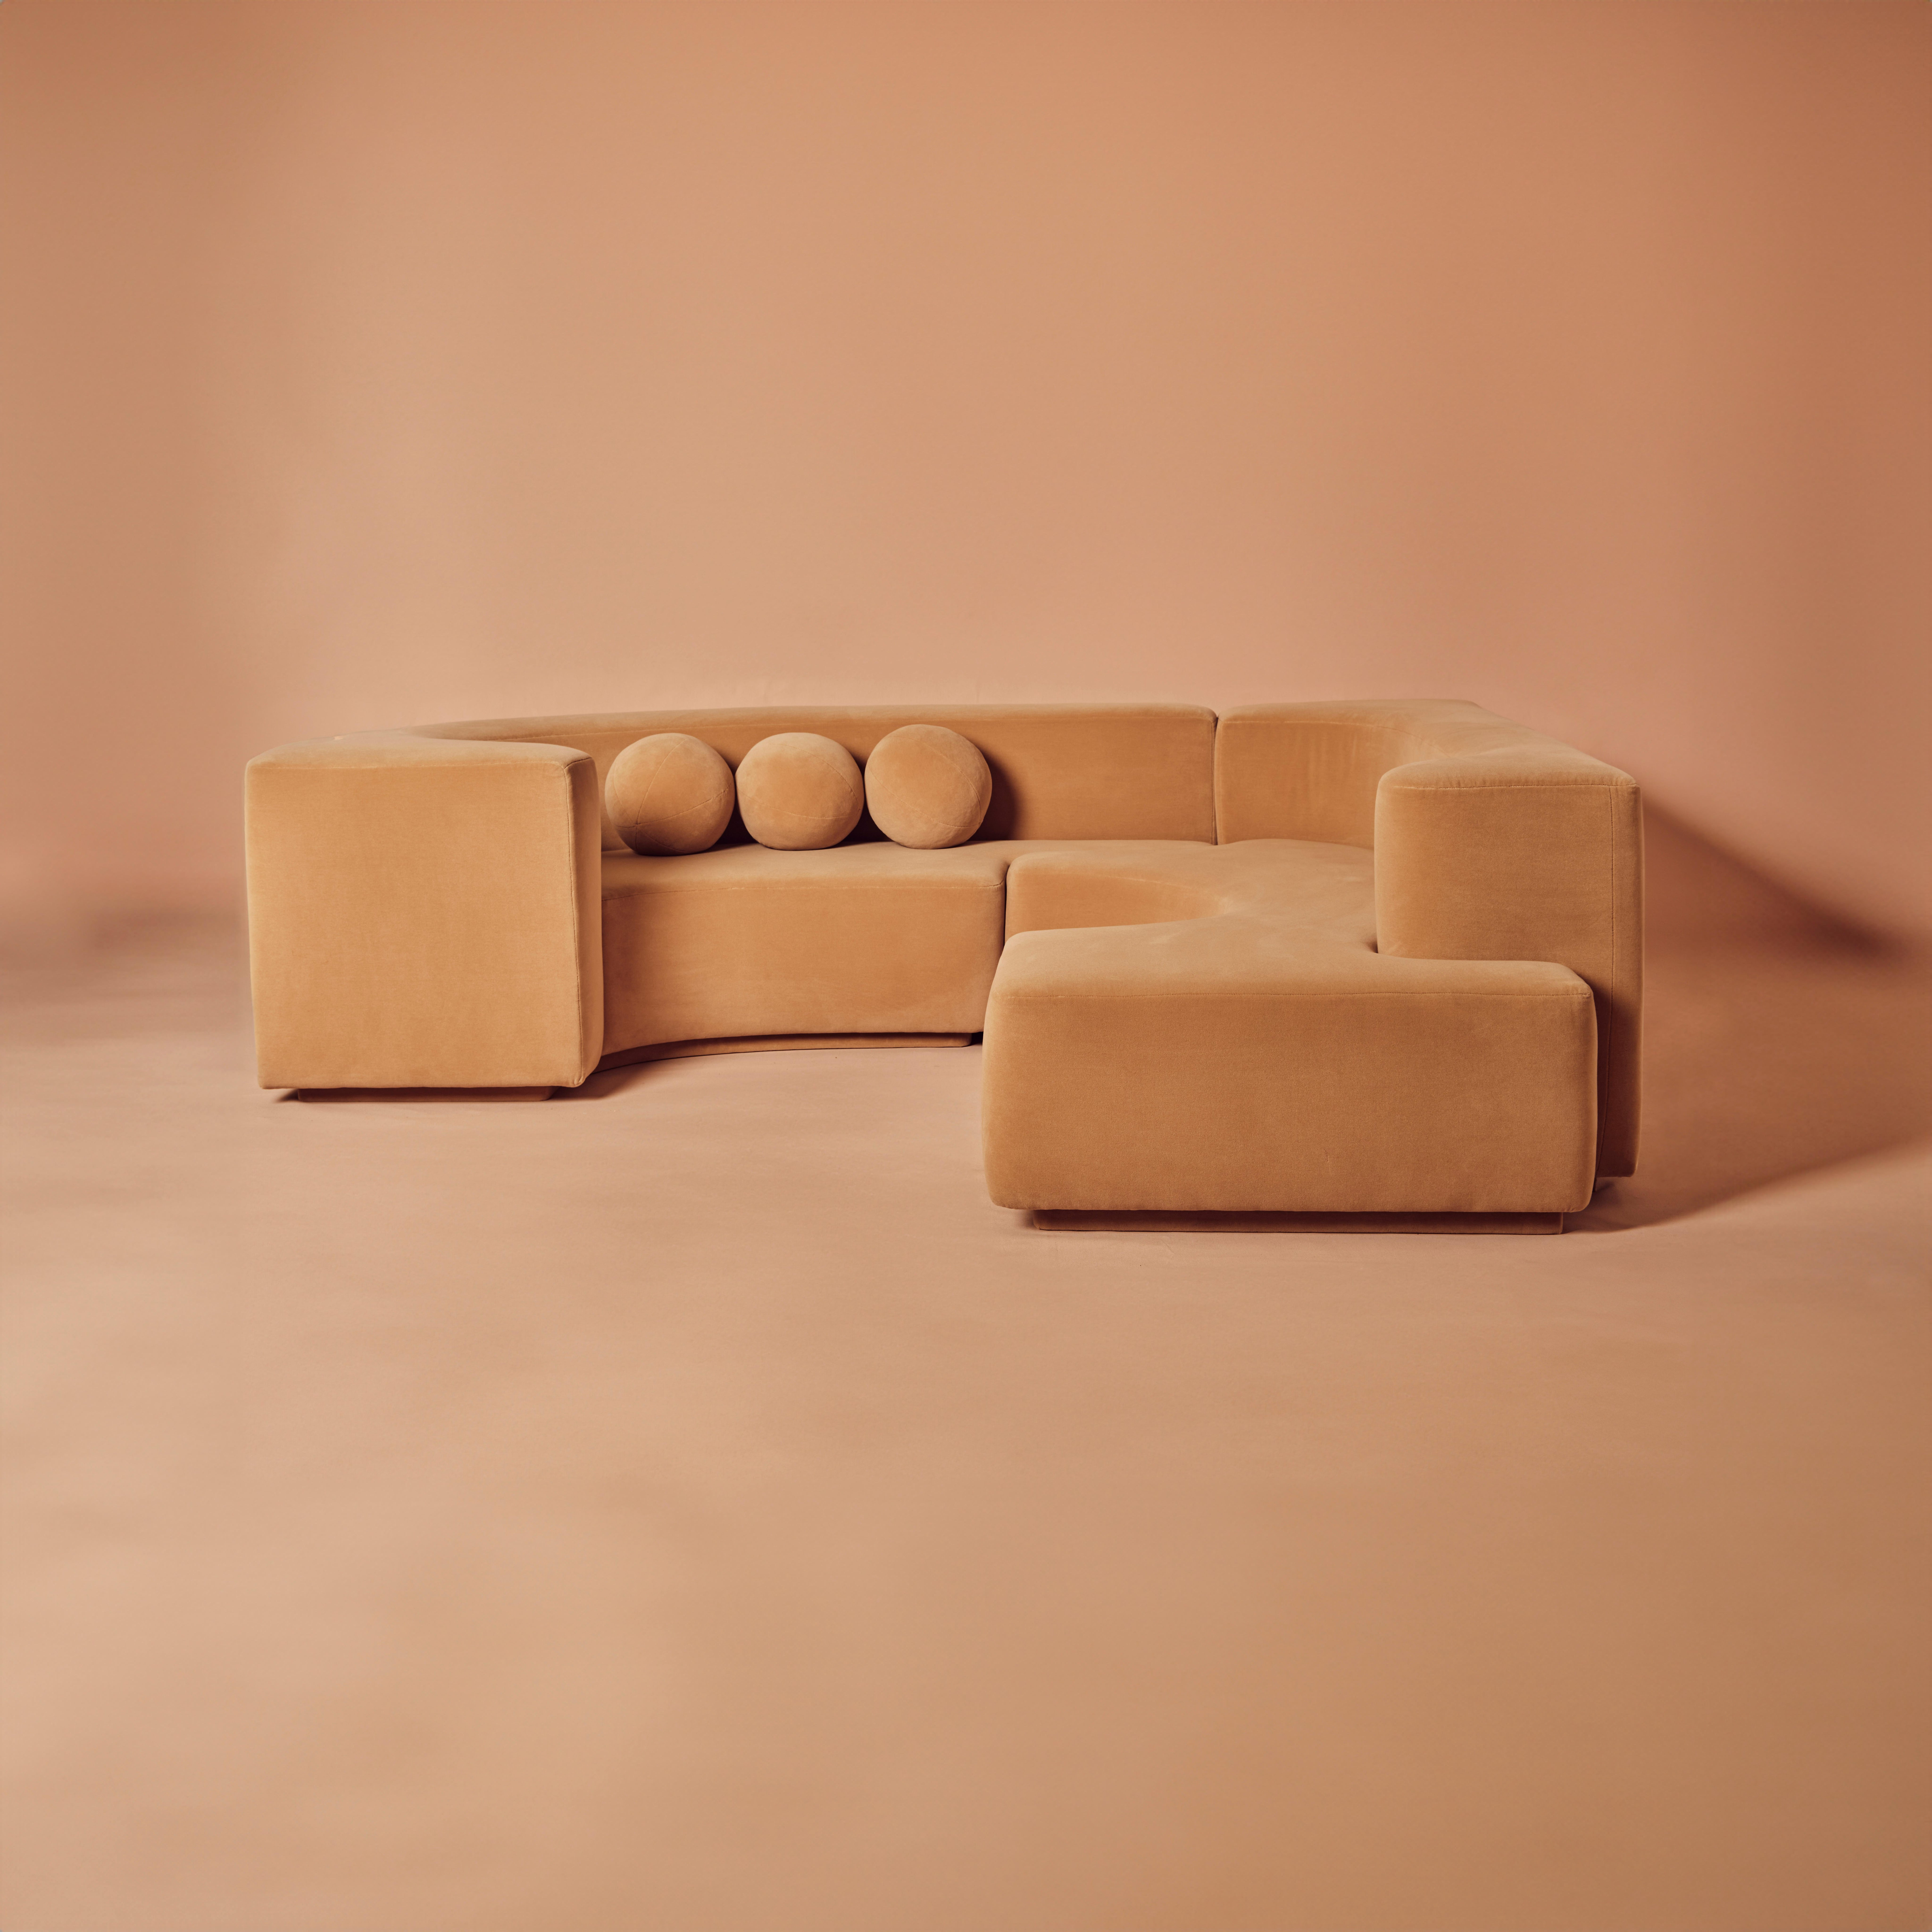 Organic Low-slung L-förmiges Sofa, das in zwei Teilen zusammengefügt werden kann. Neu gepolstert mit Dedar Ivory Boucle Wolle. Dieses Stück wird dem Lara Modular Sofa von Pamio, Massari & Toso für Stilwood, 1960er Jahre, zugeschrieben. Es hat jedoch